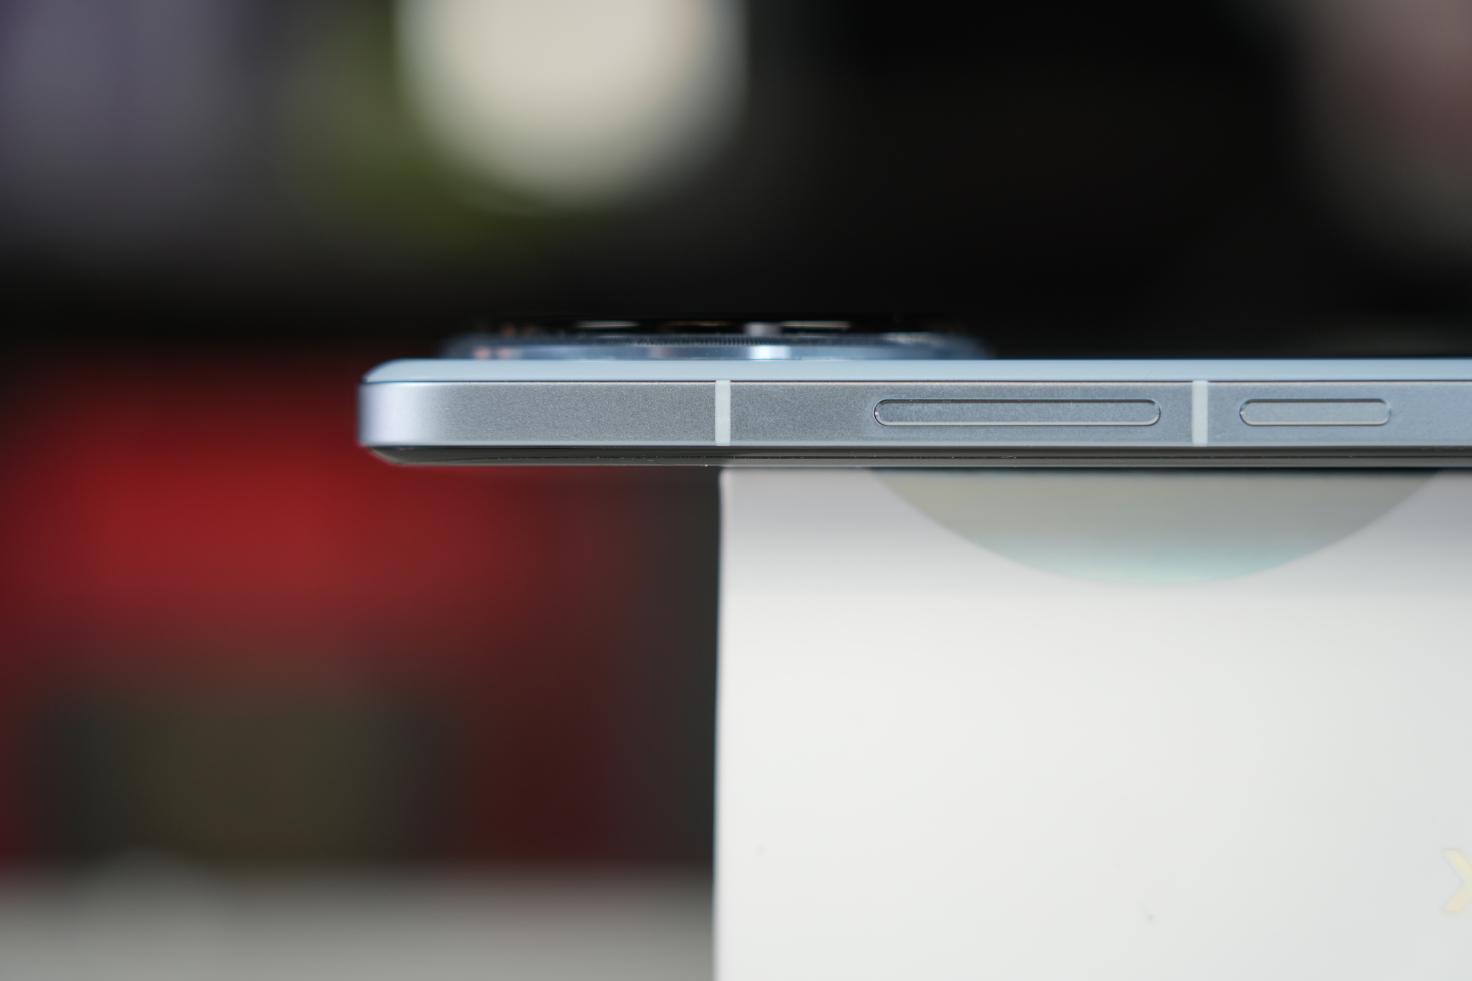 XiaomiCivi4Pro评测：徕卡加持打造系列最强影像表现_手机评测